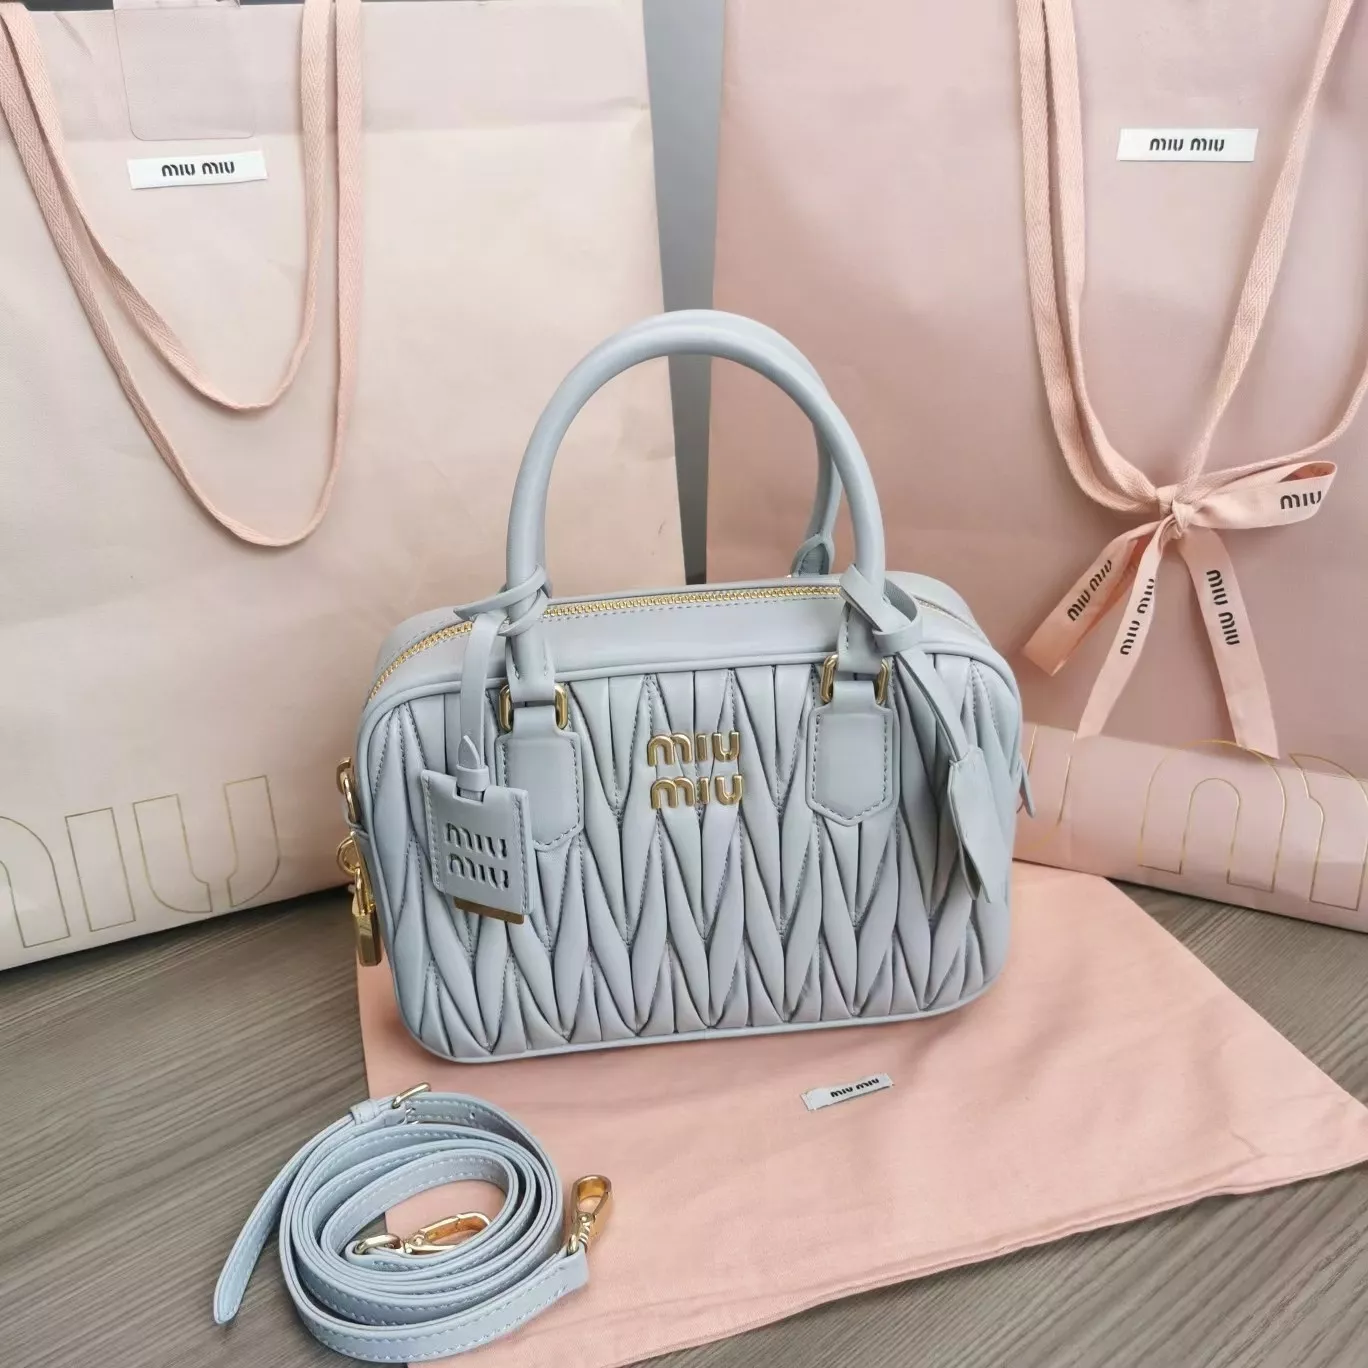 miumiuのバッグは本当にきれいで、この色はとてもきれいです。の画像 (0枚目)